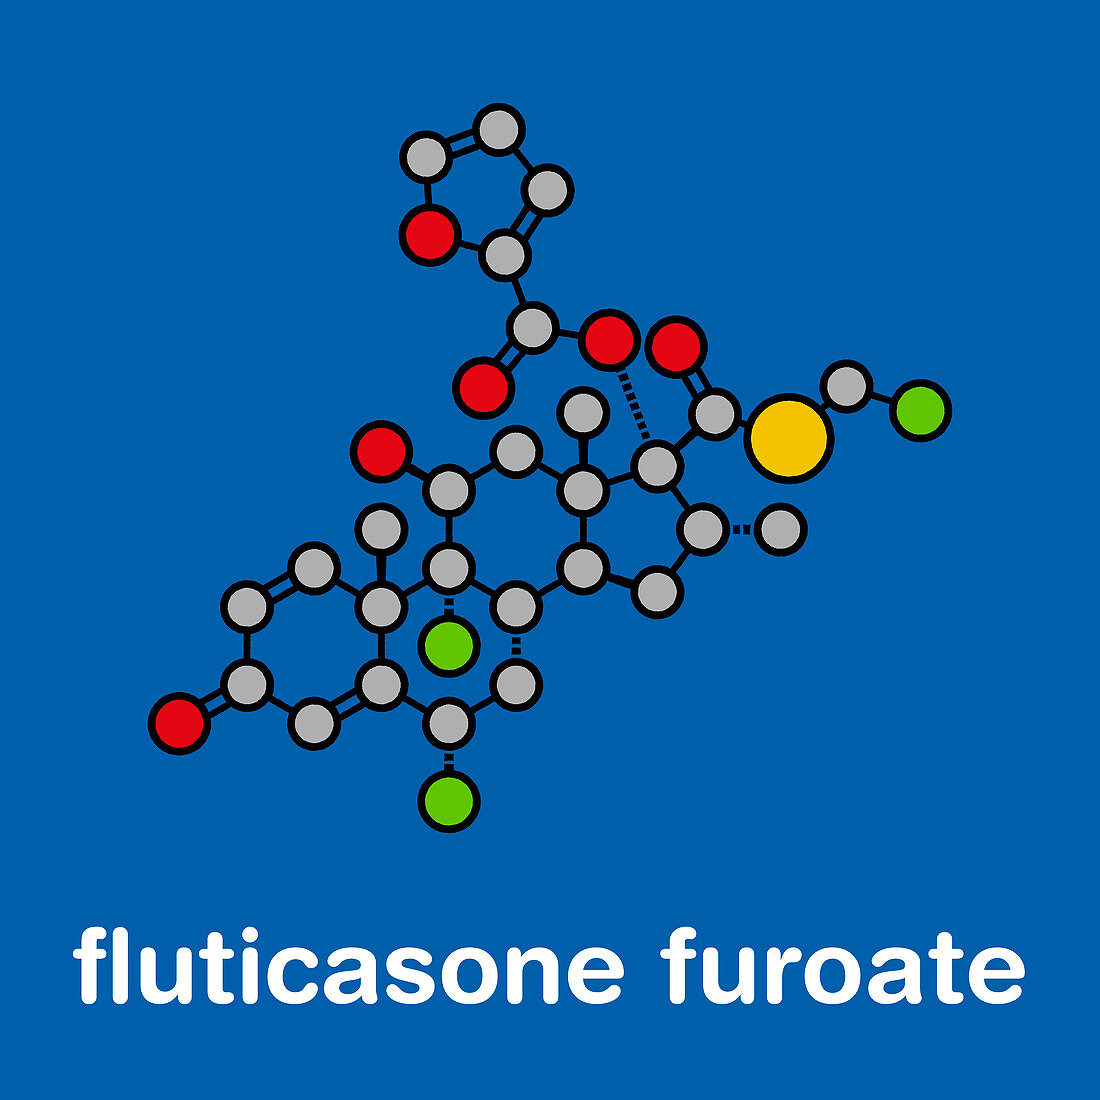 Fluticasone furoate corticosteroid drug molecule